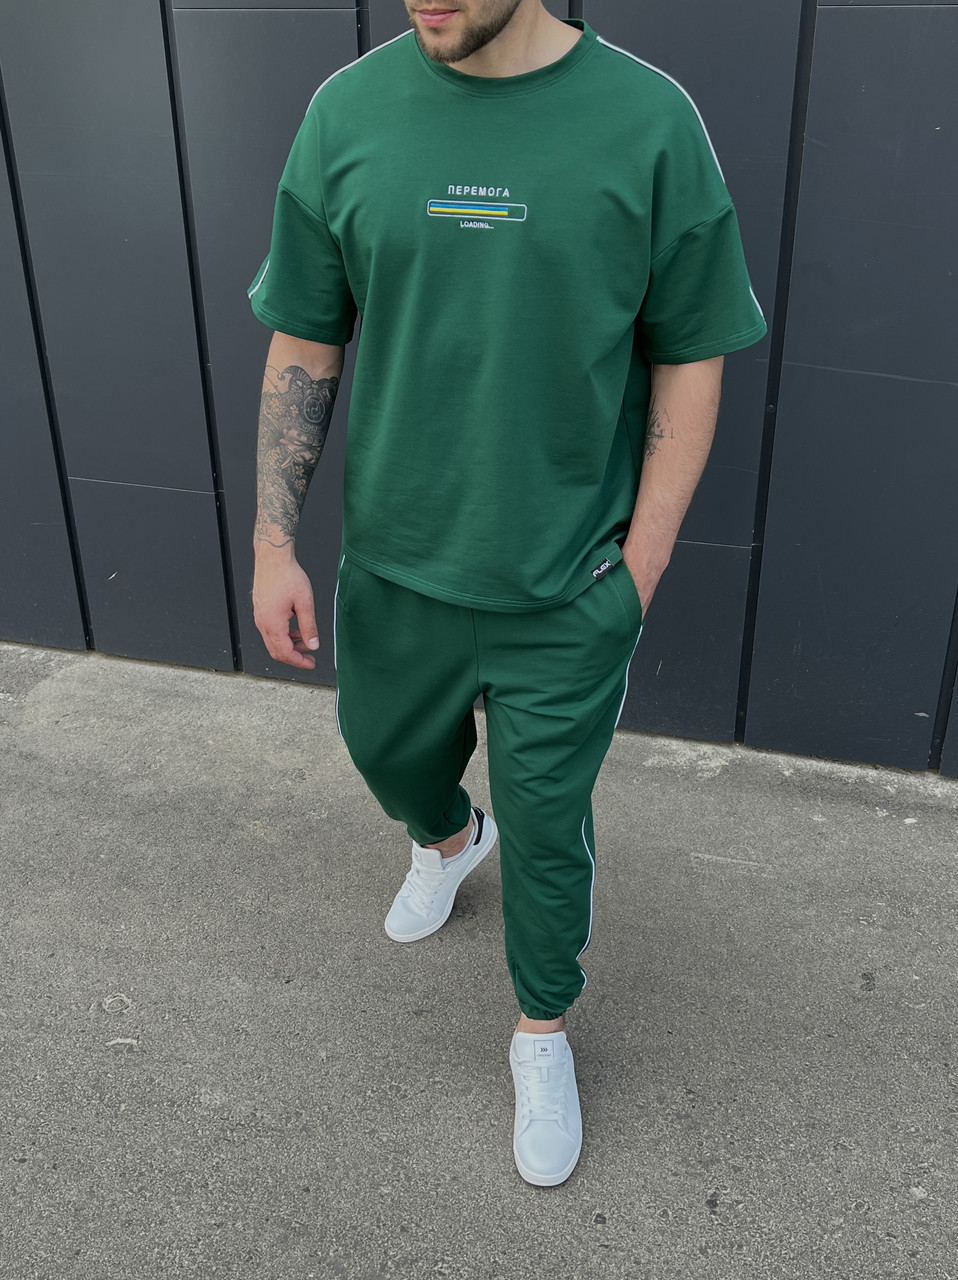 Летний комплект футболка и штаны мужские зеленый модель Перемога TURWEAR